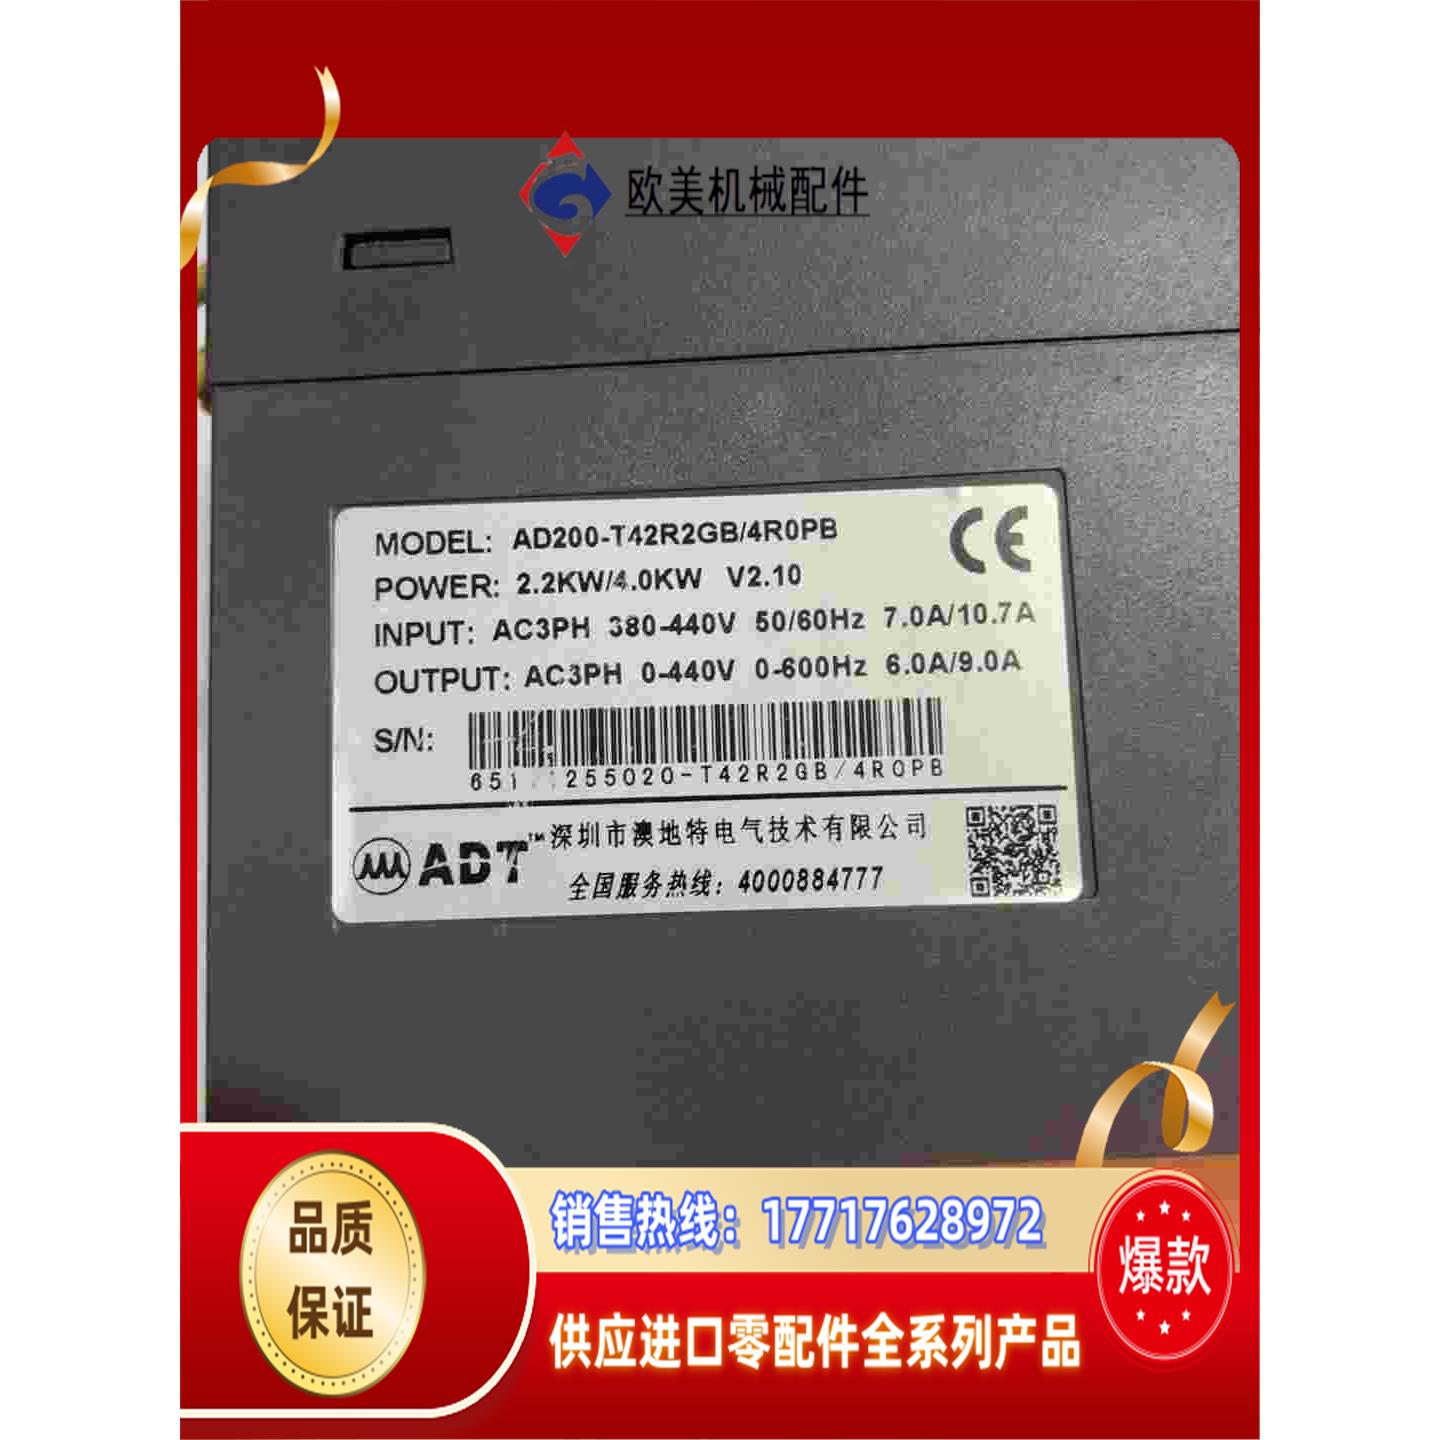 奥地特变频器AD200-T42R2GB/4R0PB2.2议价 电子元器件市场 其它元器件 原图主图